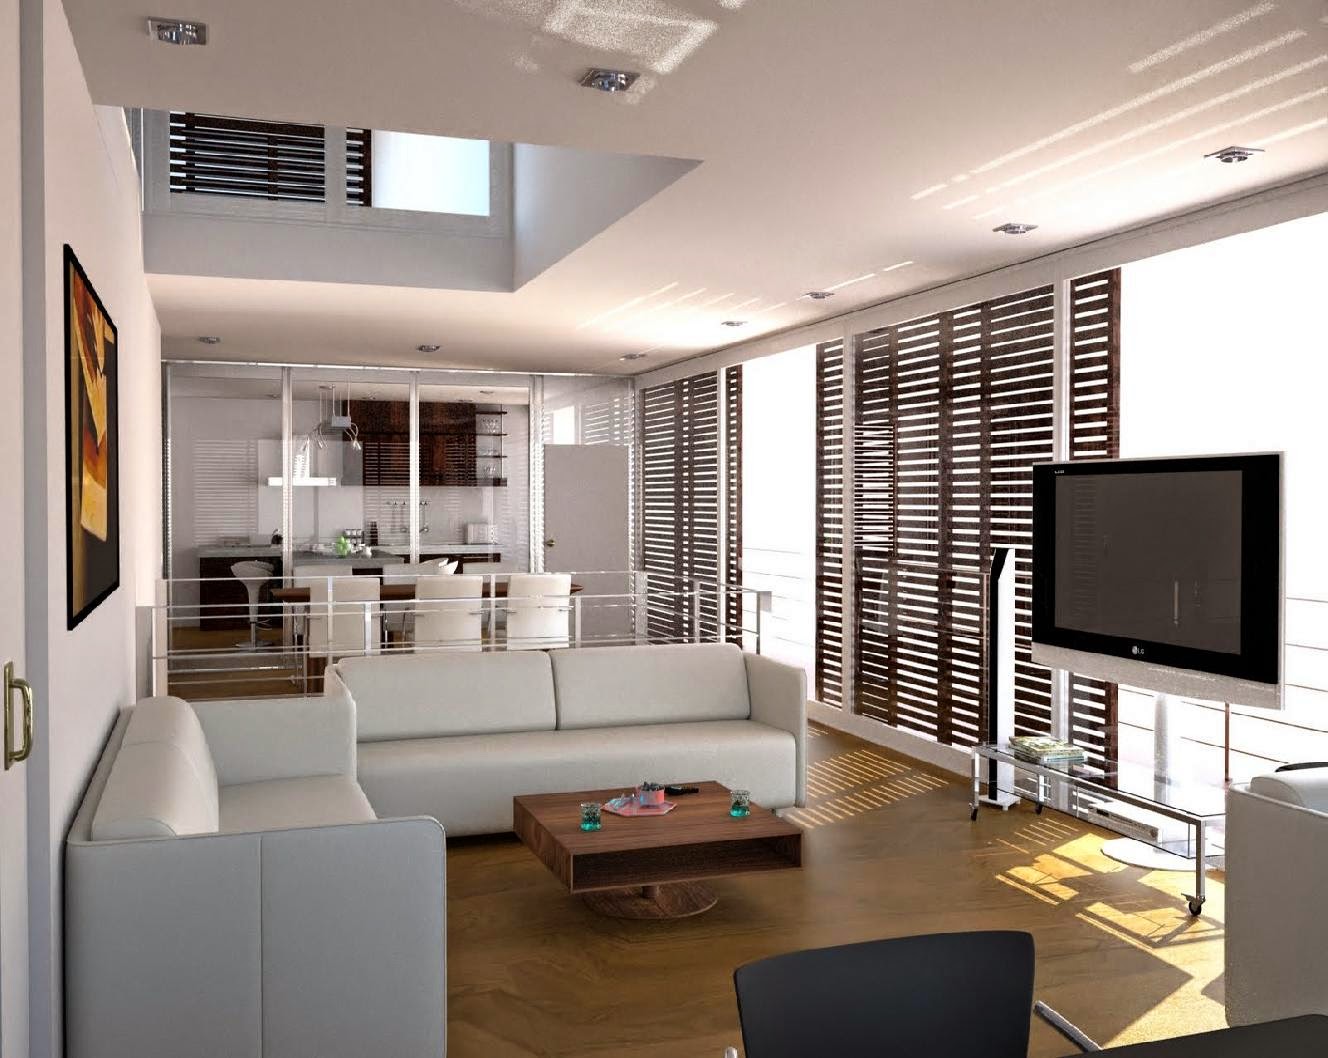 Gambar contoh desain interior rumah sederhana minimalis